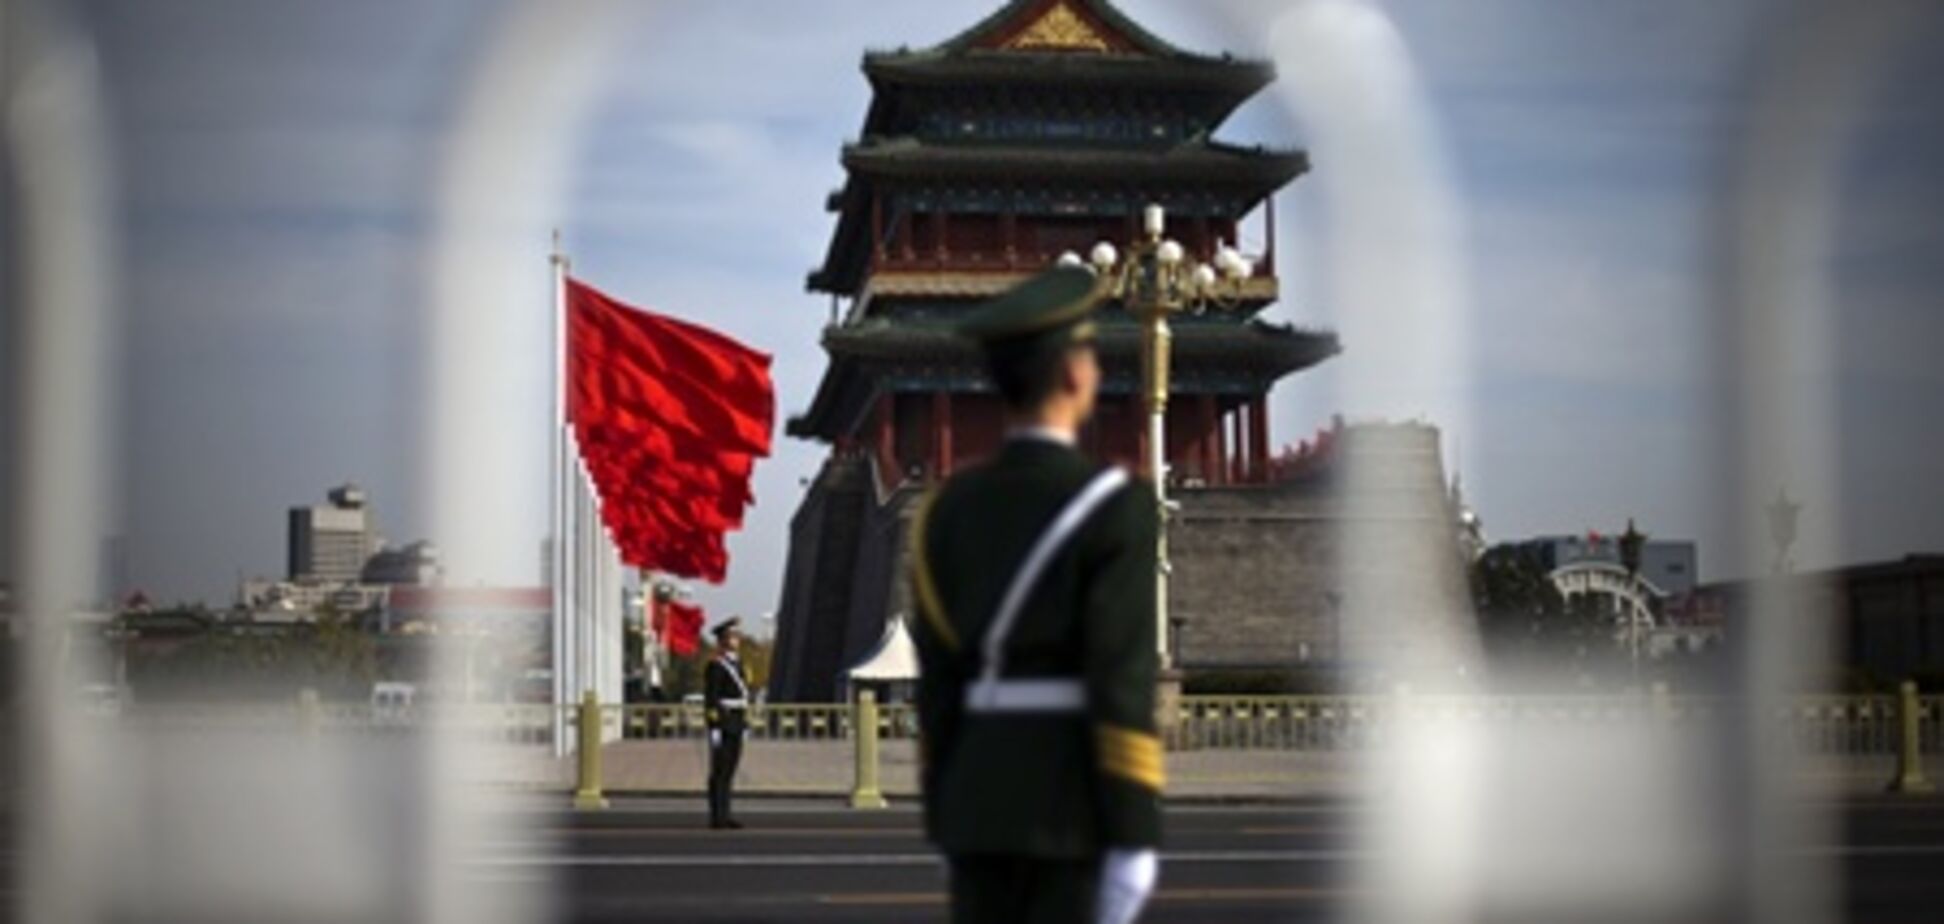 Передвижение туристов по Пекину ограничено